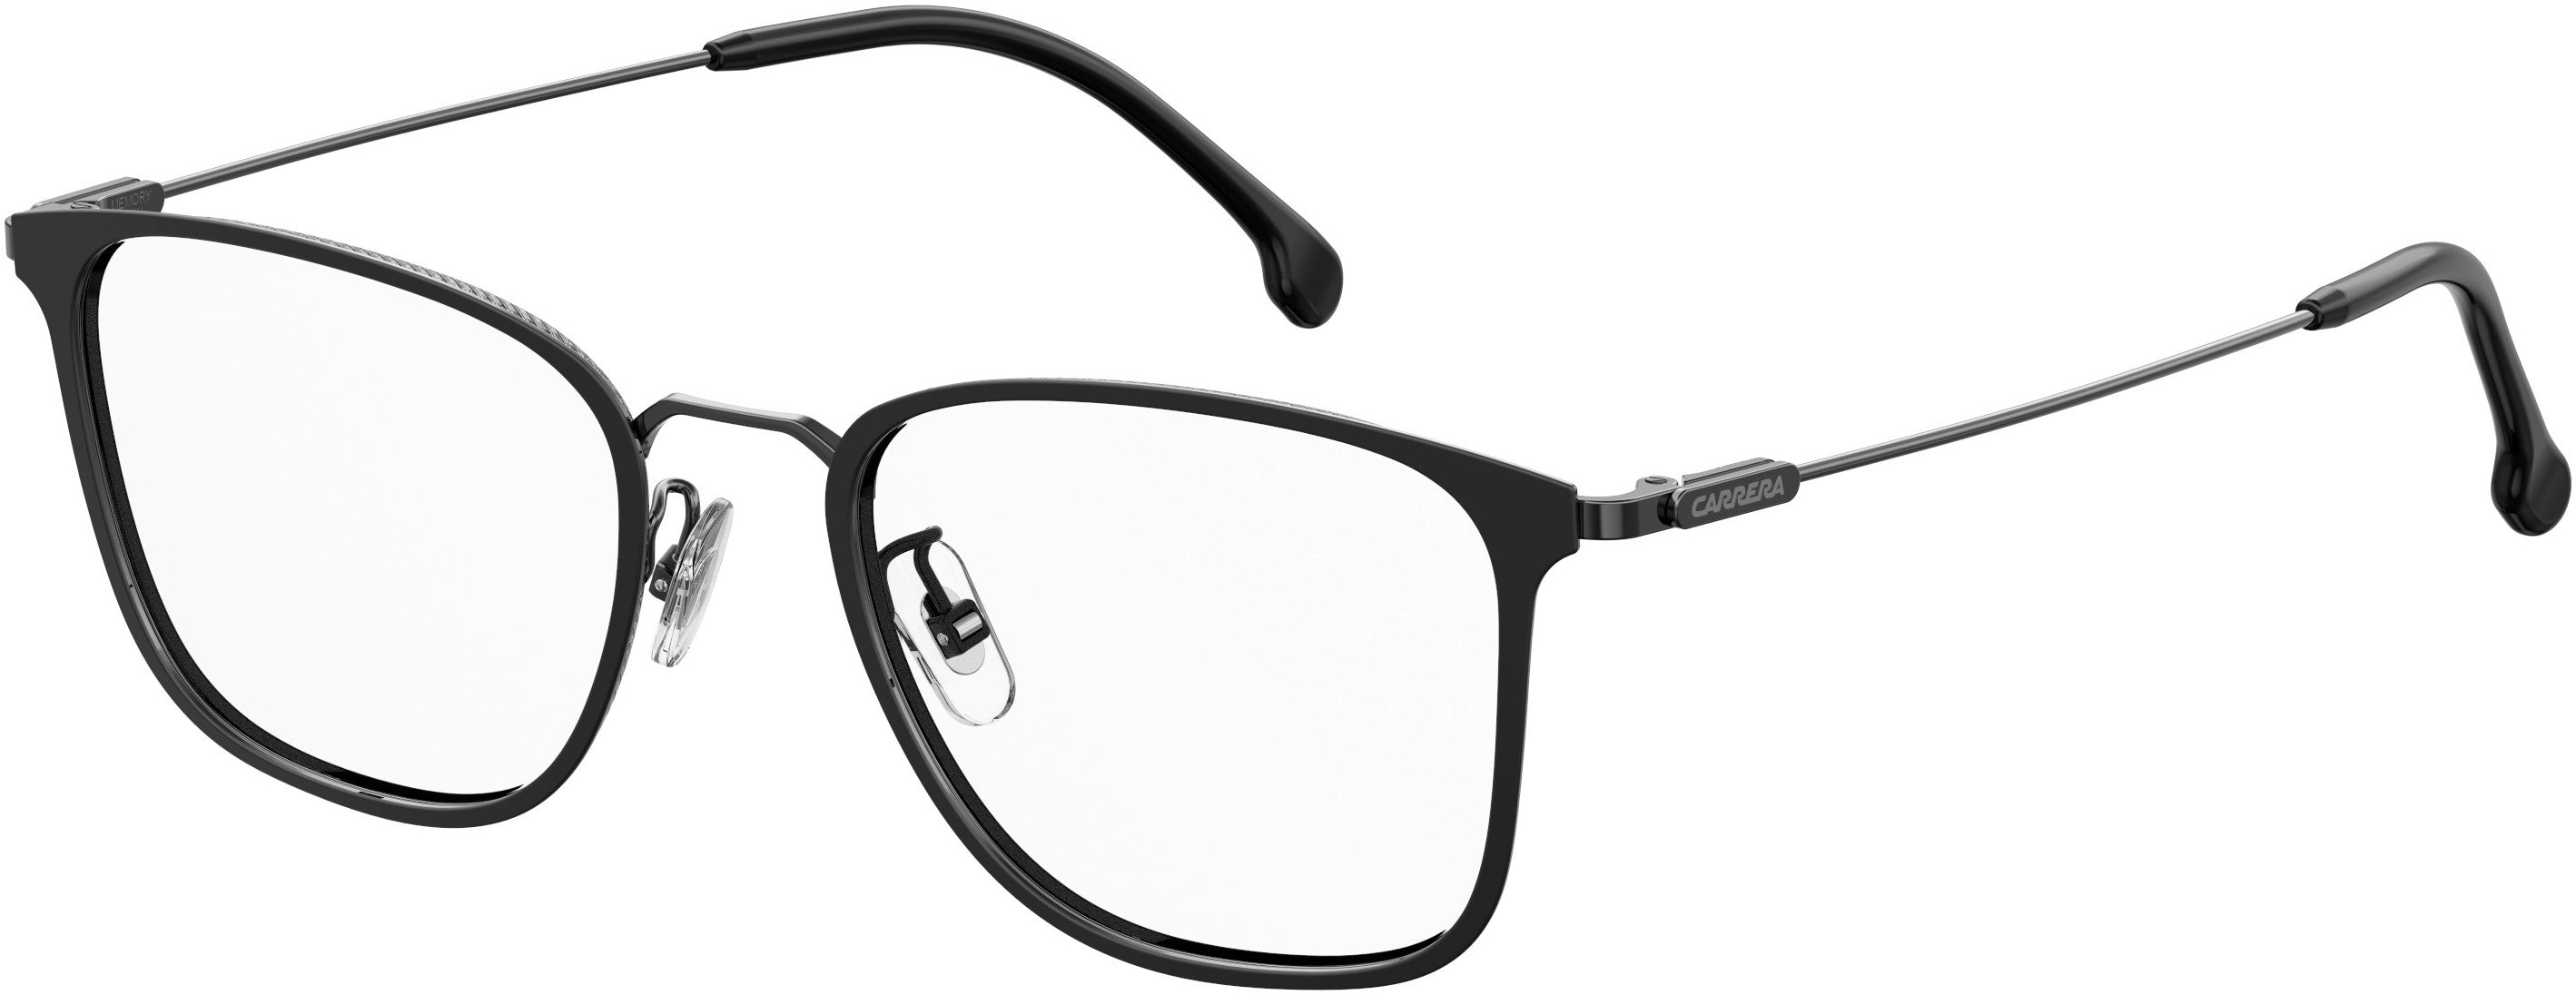  Carrera 192/G Rectangular Eyeglasses 0V81-0V81  Dark Ruthenium Black (00 Demo Lens)